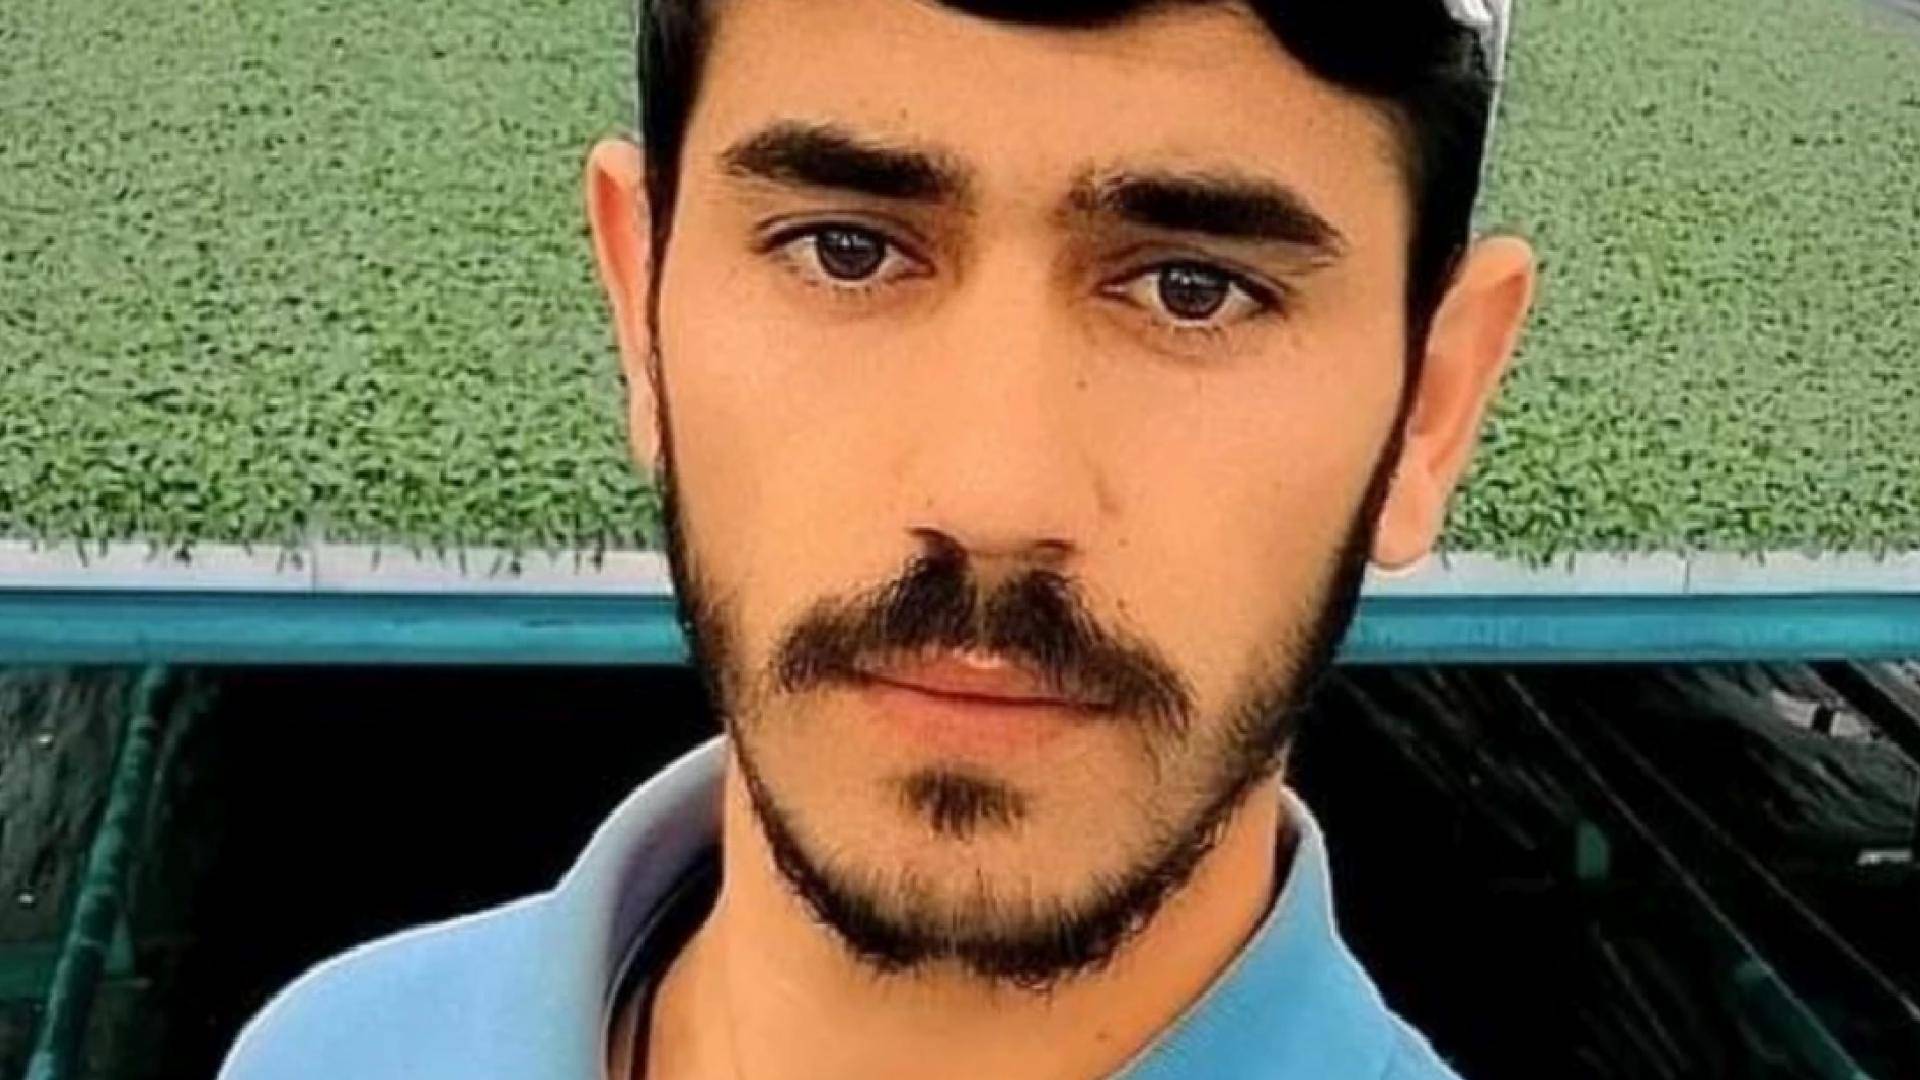 Mardin'de elektrik akımına kapılan işçi hayatını kaybetti